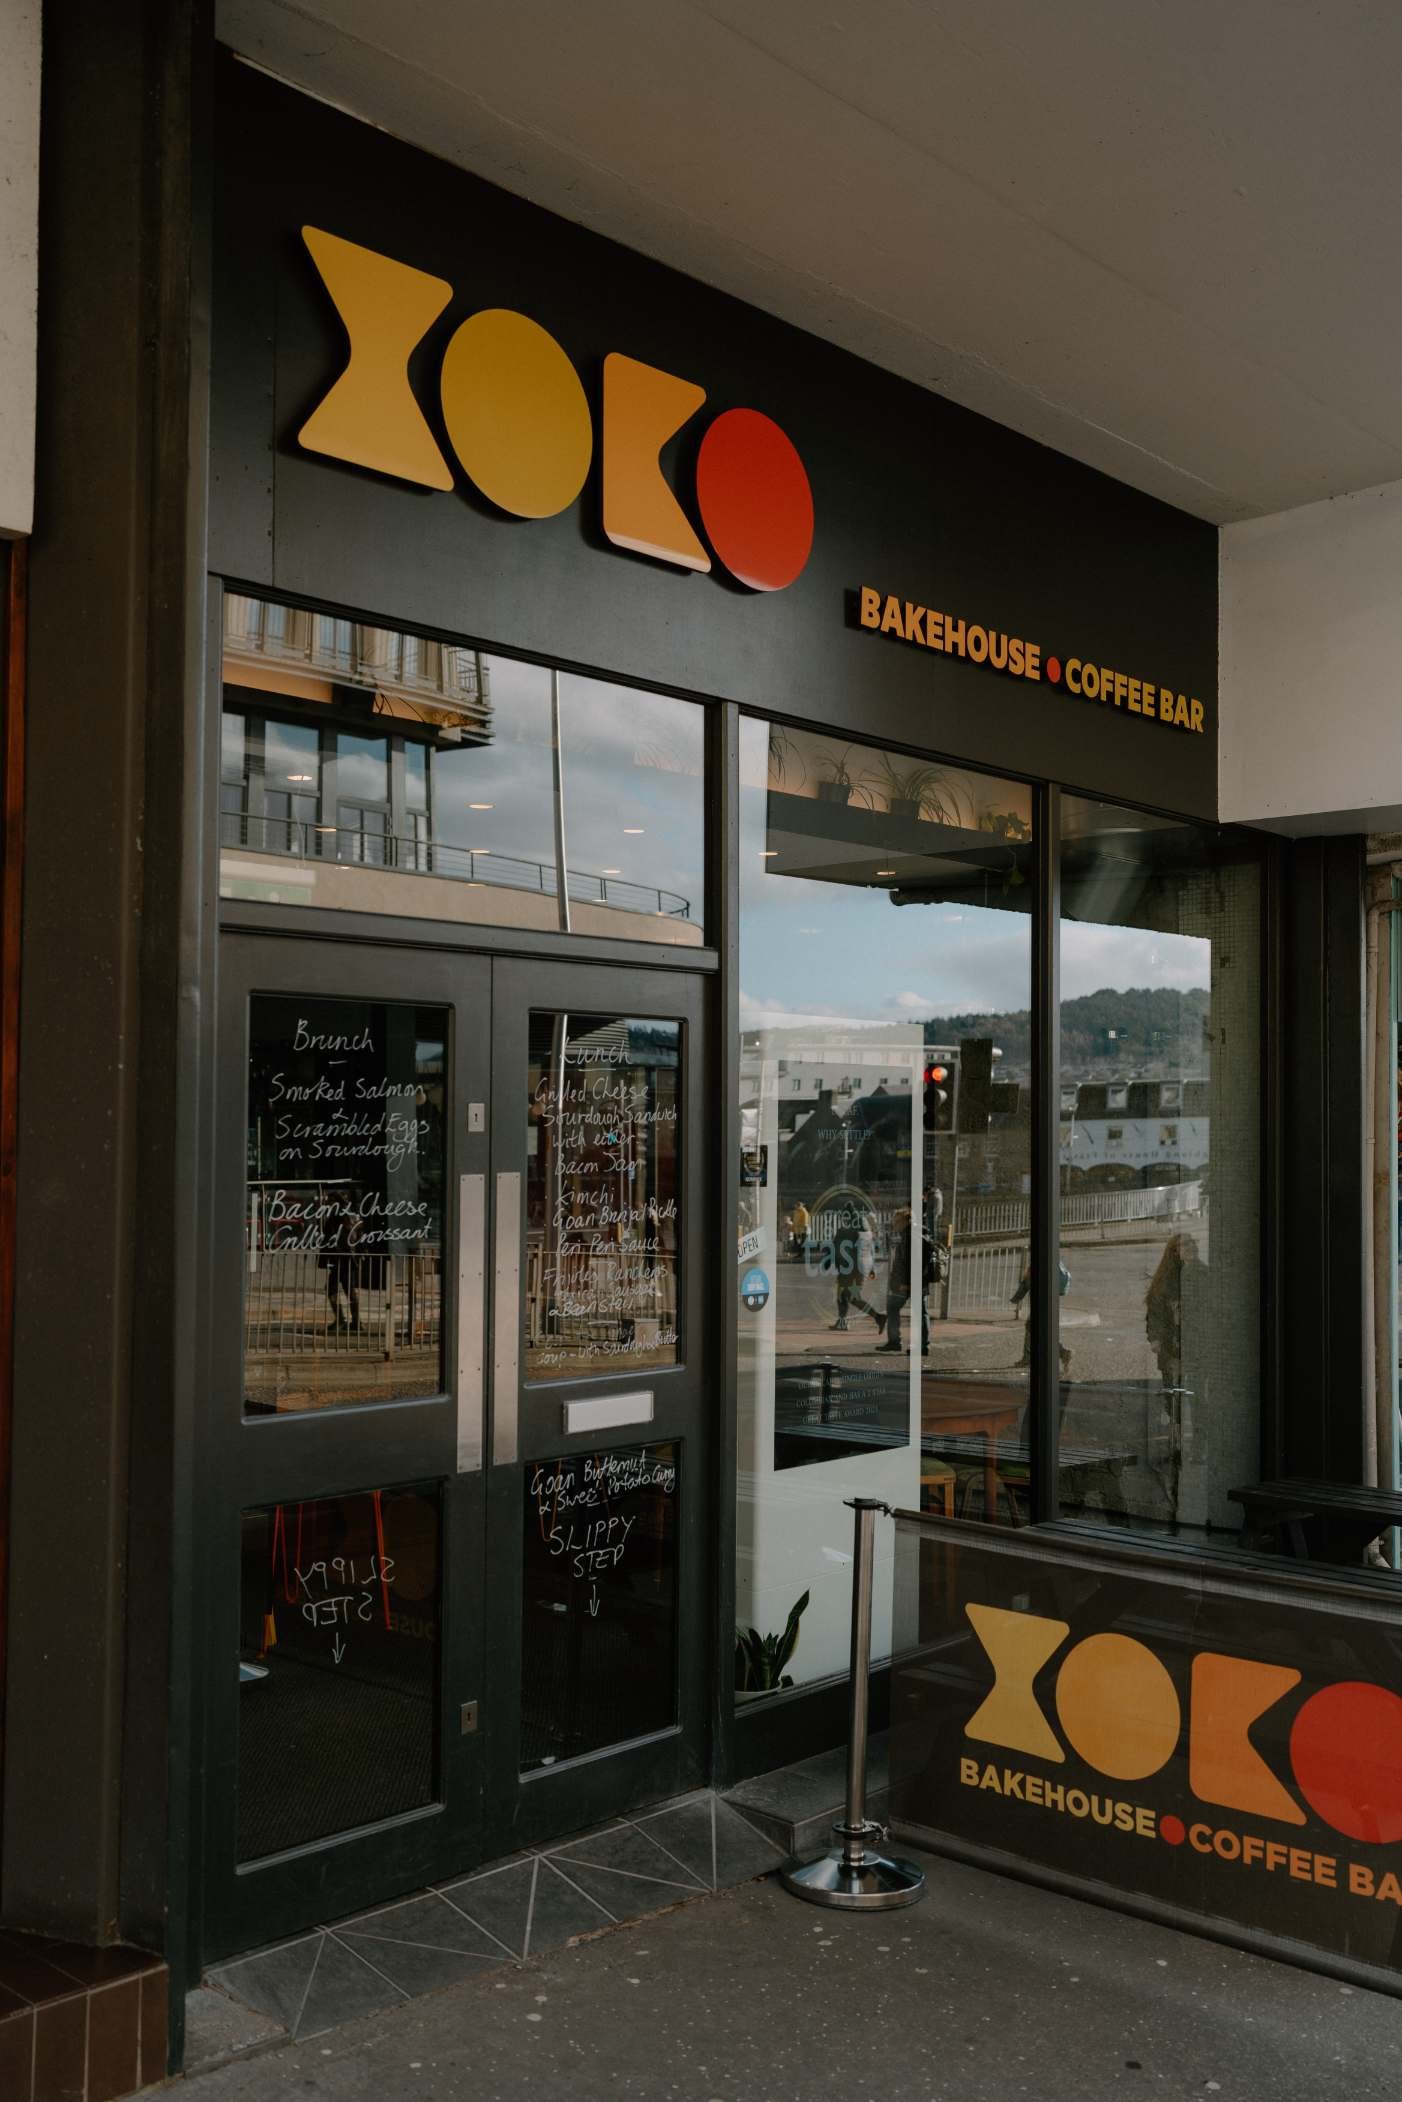 XOKO Bakehouse and Coffee Bar - Hidden Scotland